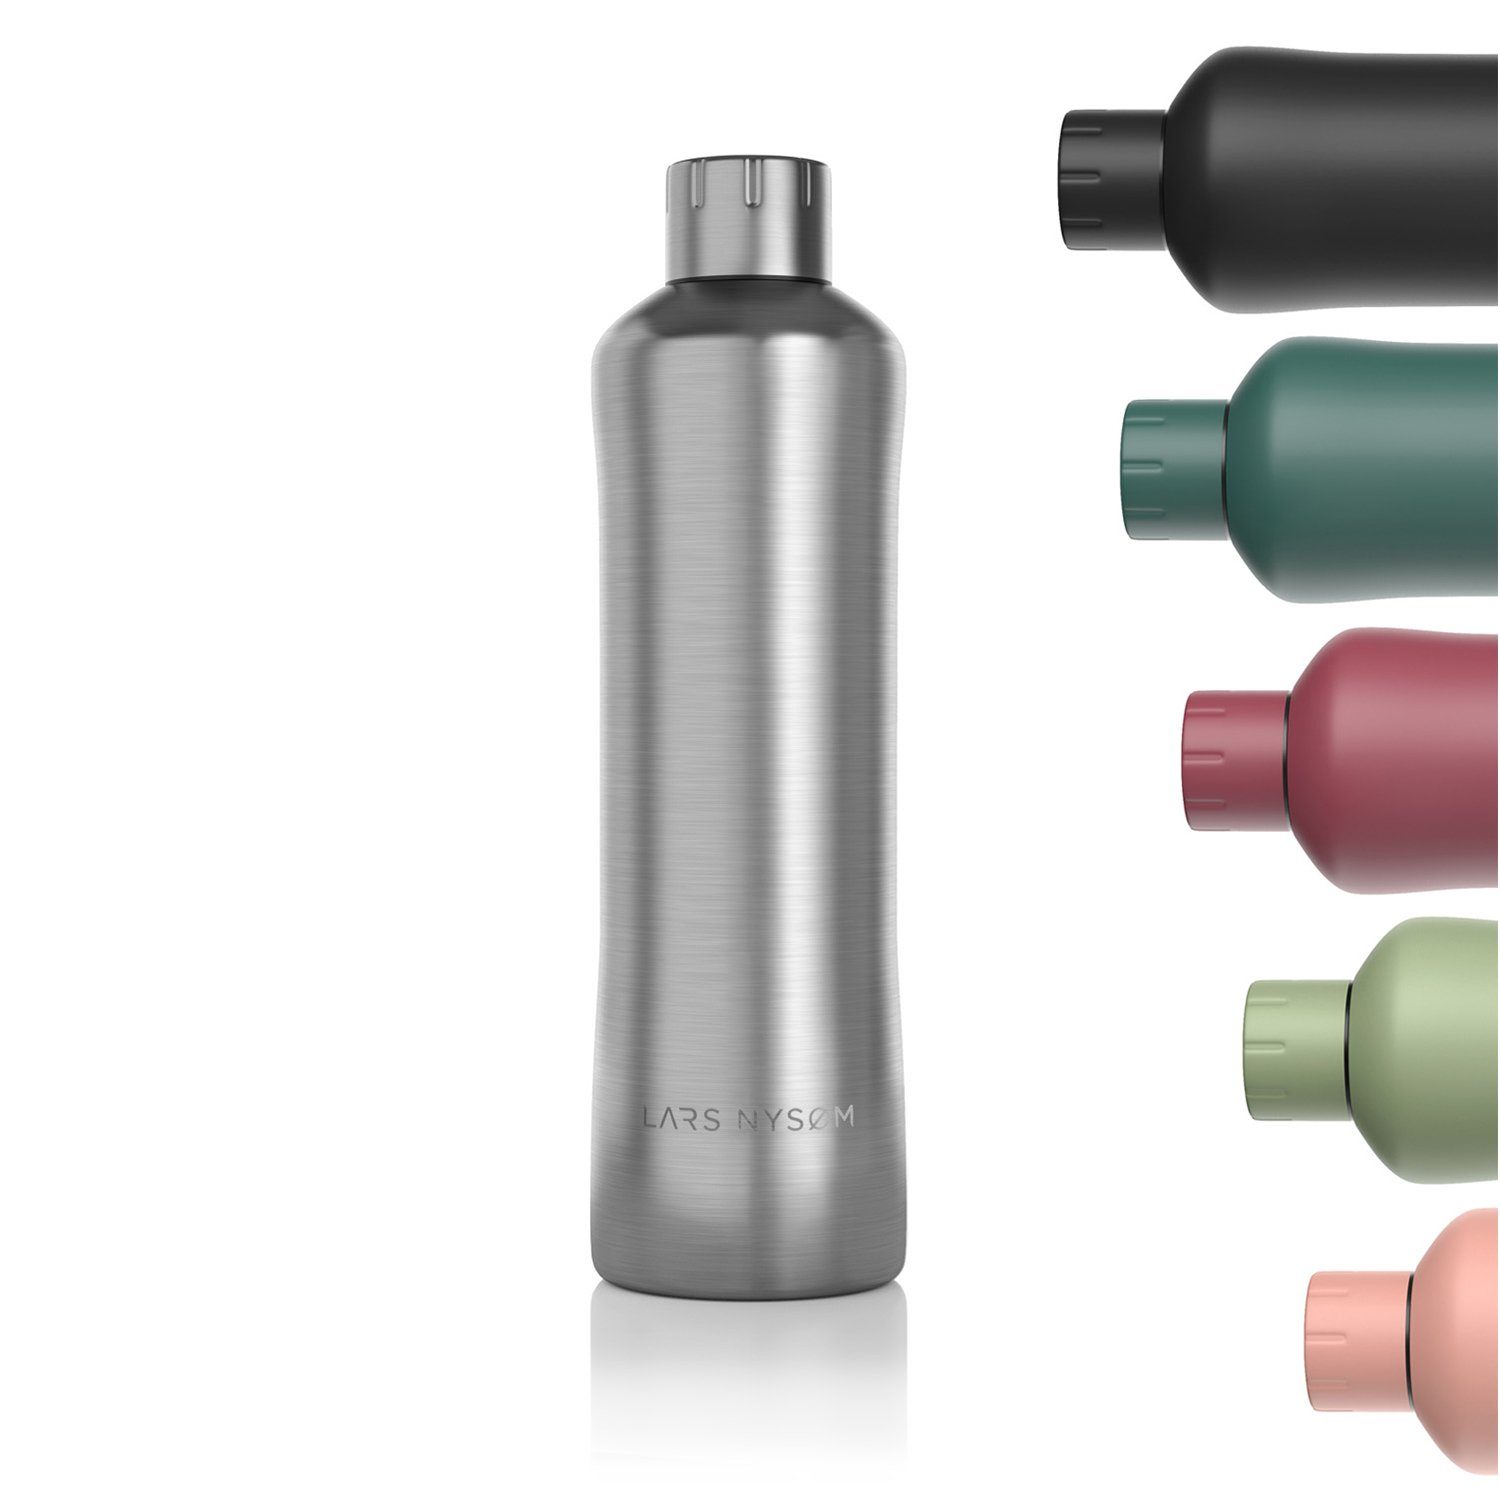 LARS NYSØM Isolierflasche Bølge, Kohlensäure Thermosflasche geeignet Steel BPA-Freie Stainless